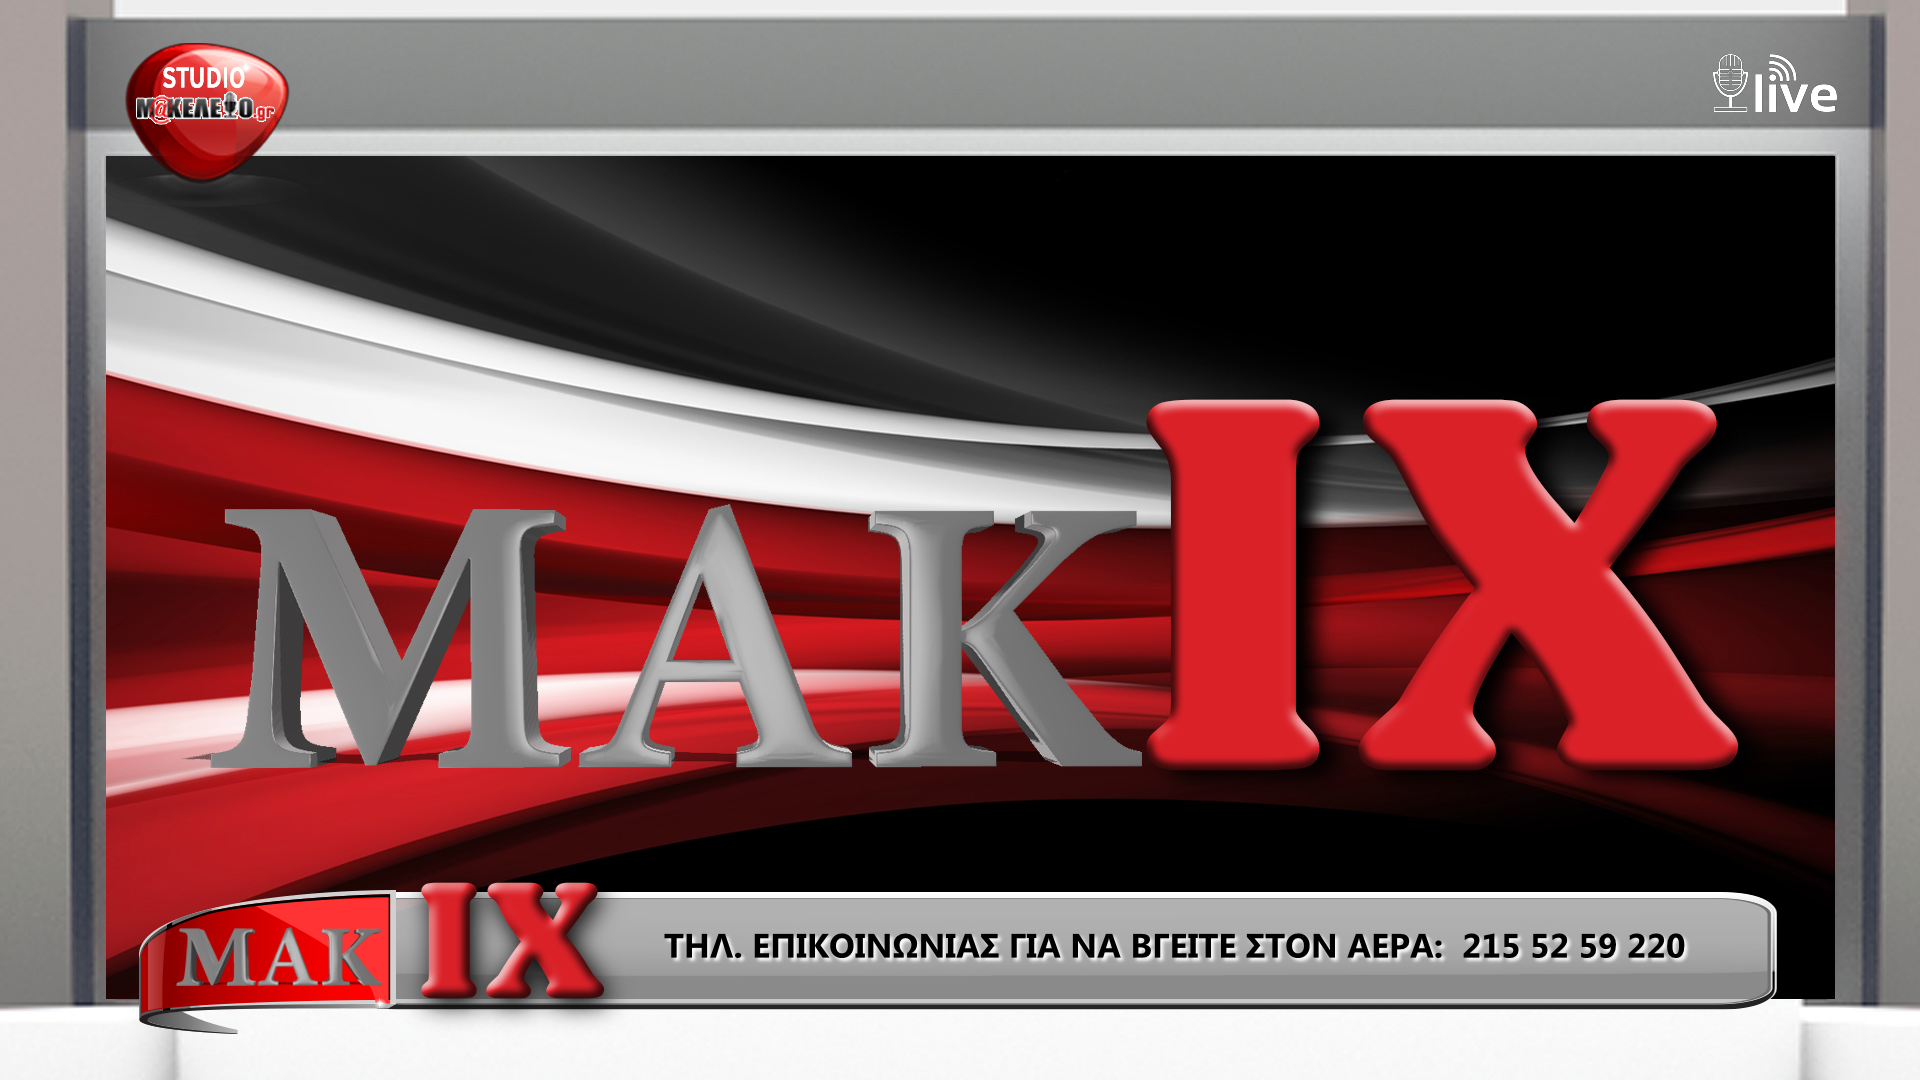 MAK IX NO 1